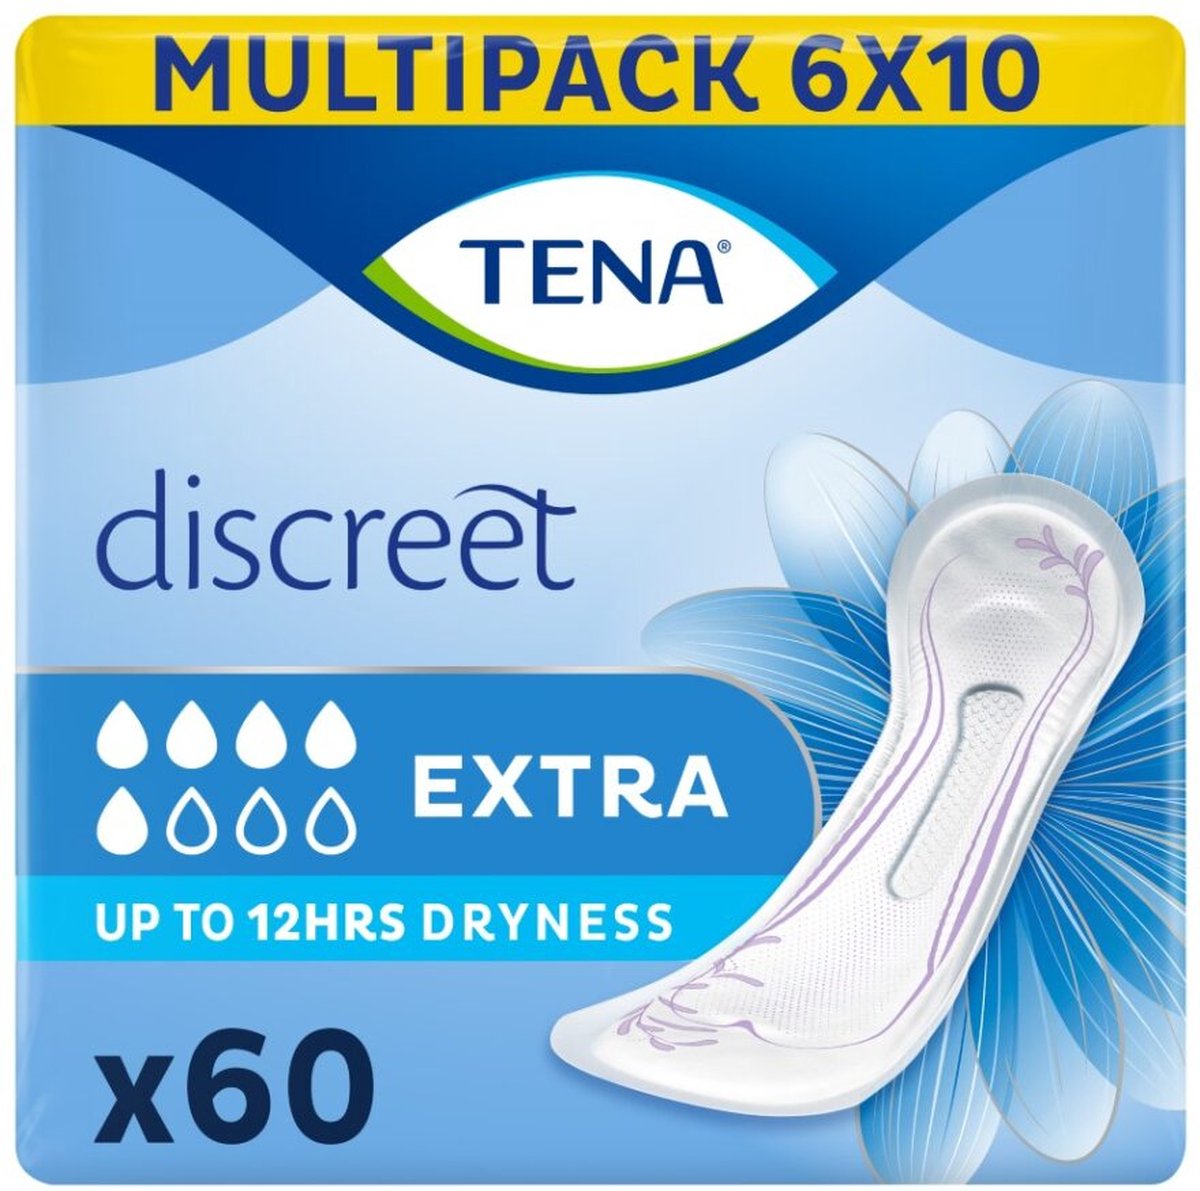 TENA Discreet Extra verbanden - 6 x 10 stuks - voor urineverlies - TENA